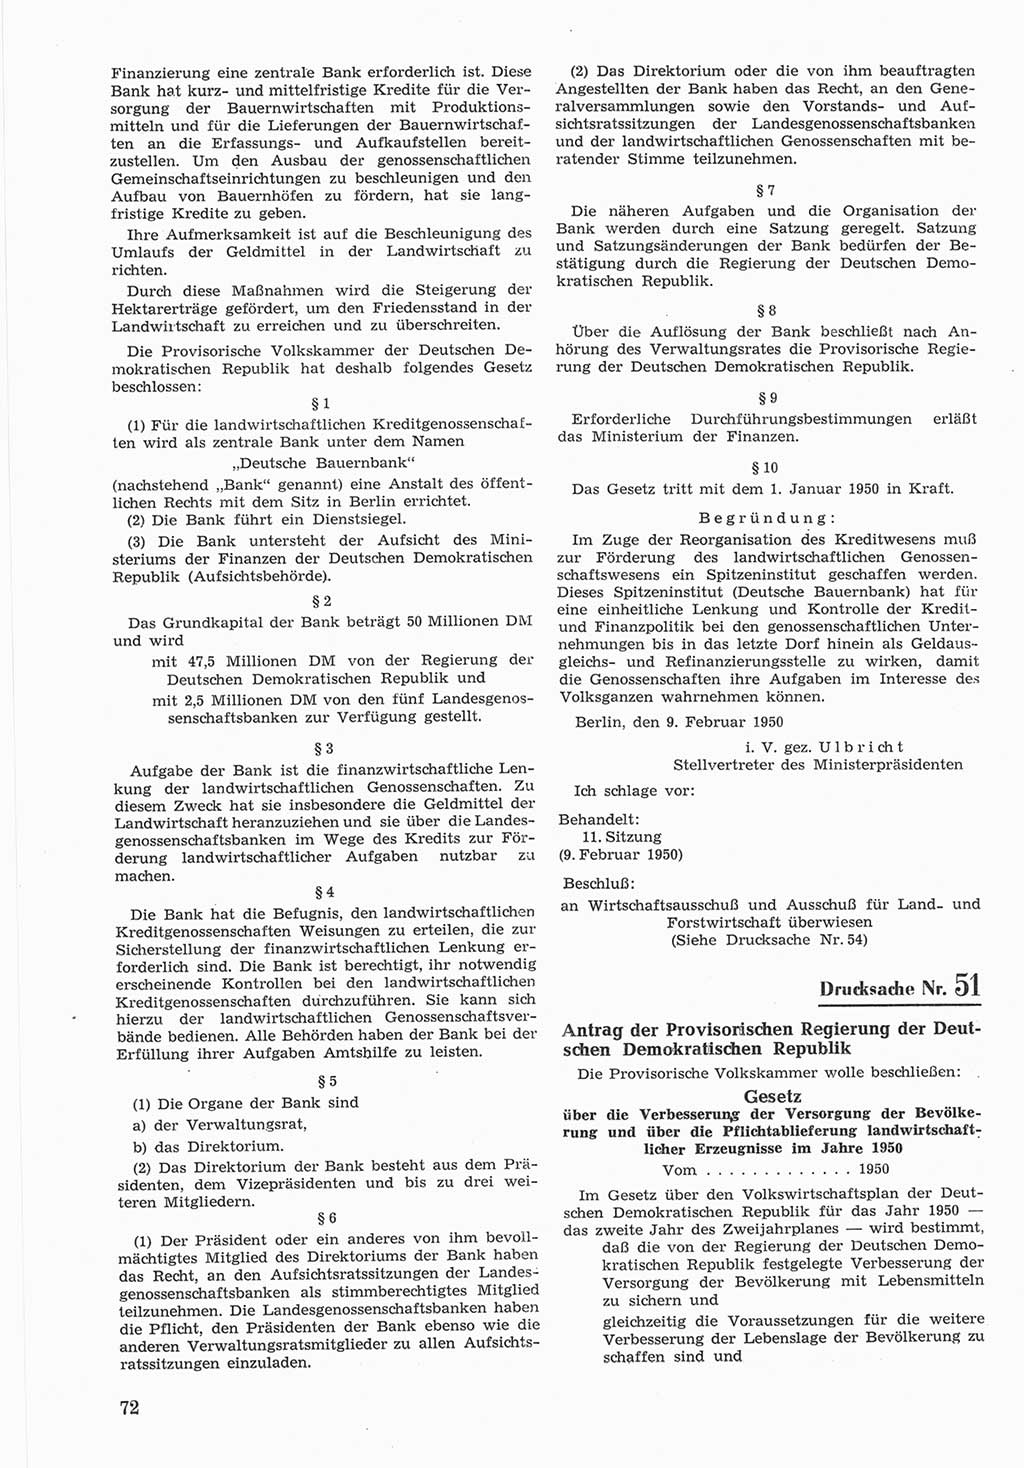 Provisorische Volkskammer (VK) der Deutschen Demokratischen Republik (DDR) 1949-1950, Dokument 672 (Prov. VK DDR 1949-1950, Dok. 672)